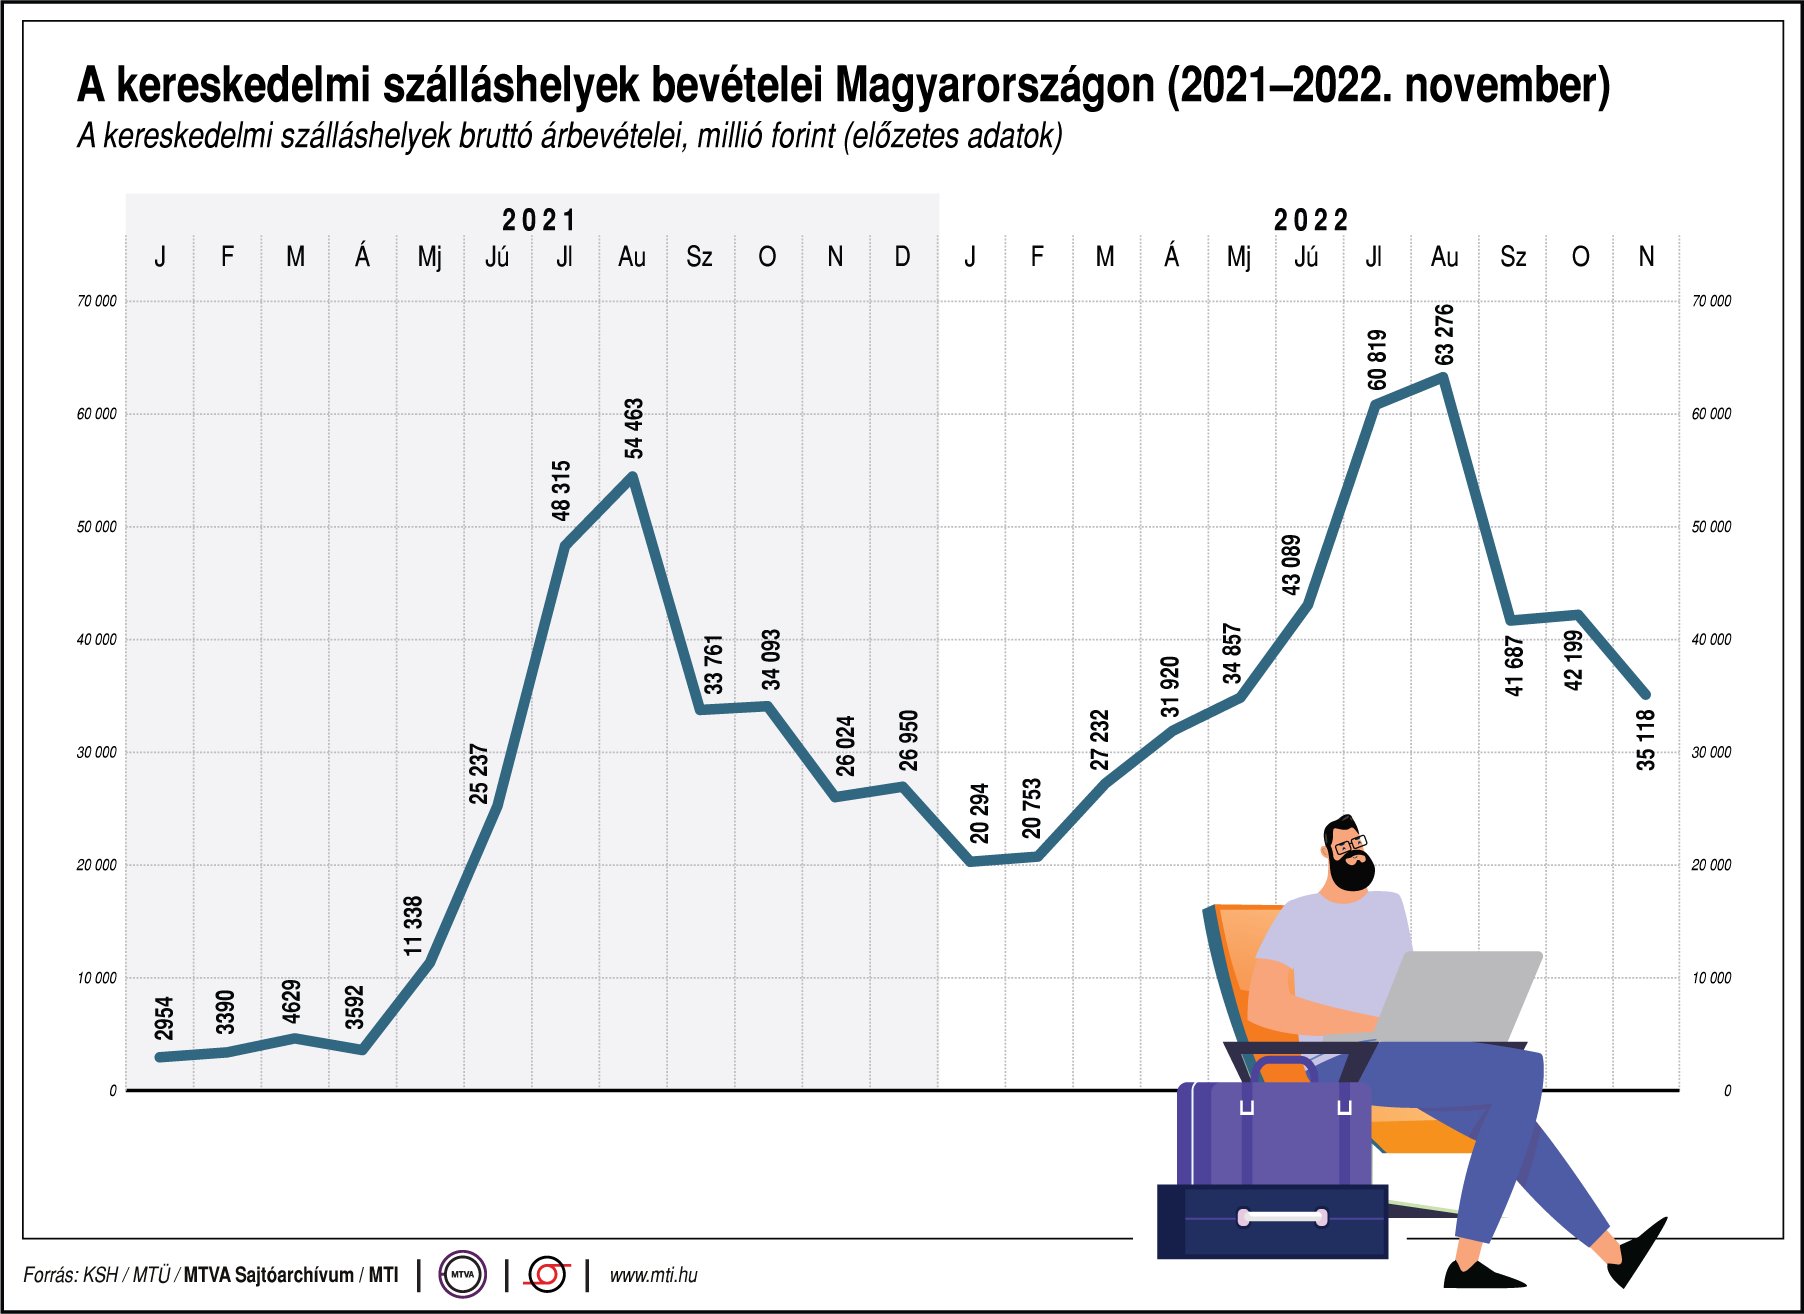 A kereskedelmi szálláshelyek bevételei Magyaroszágon (2021-2022. november)